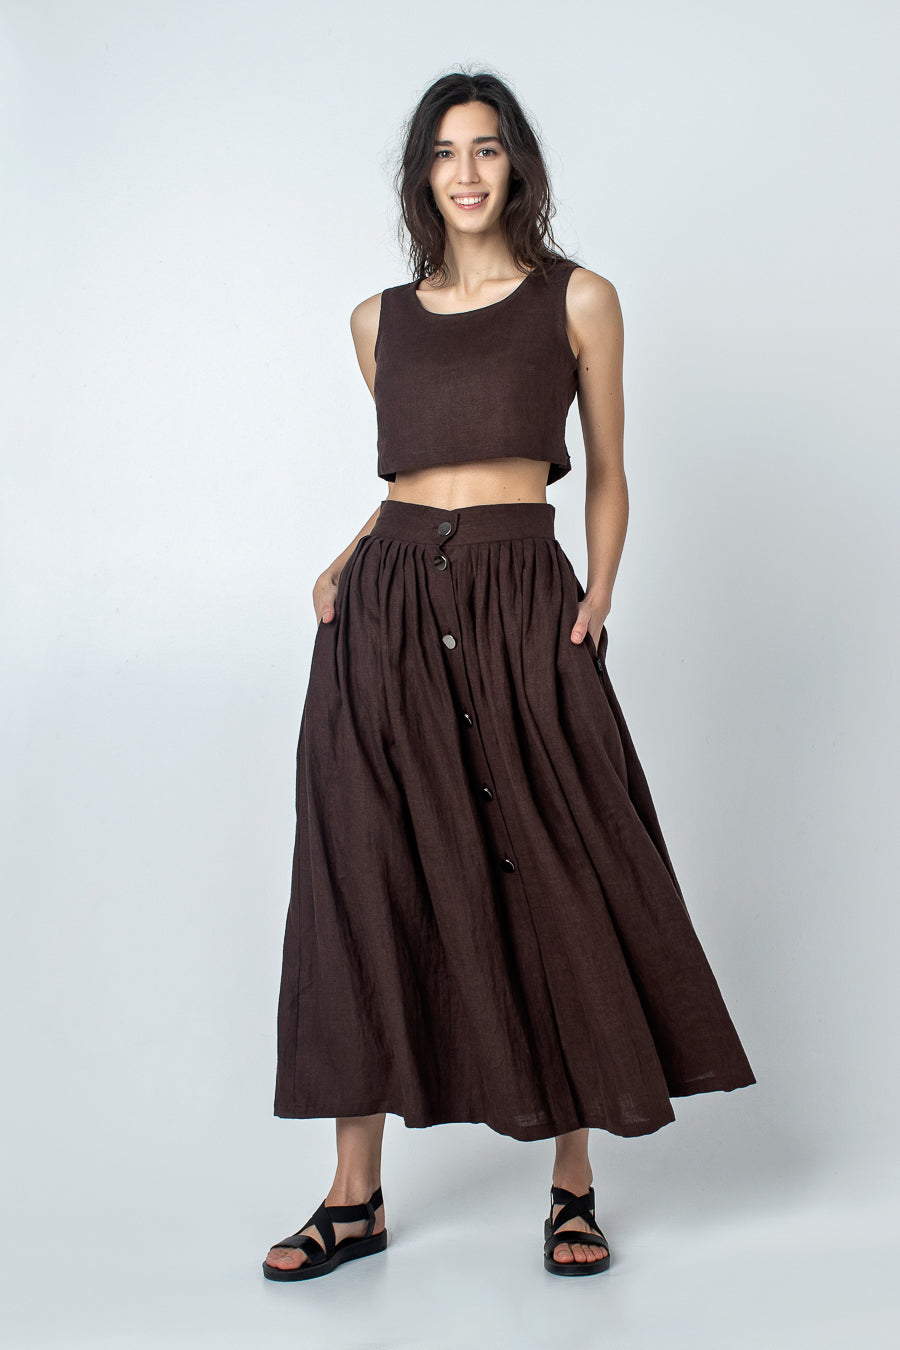 Linen Midi Skirt, Brown A Line Skirt Women, High Waist Skirt With